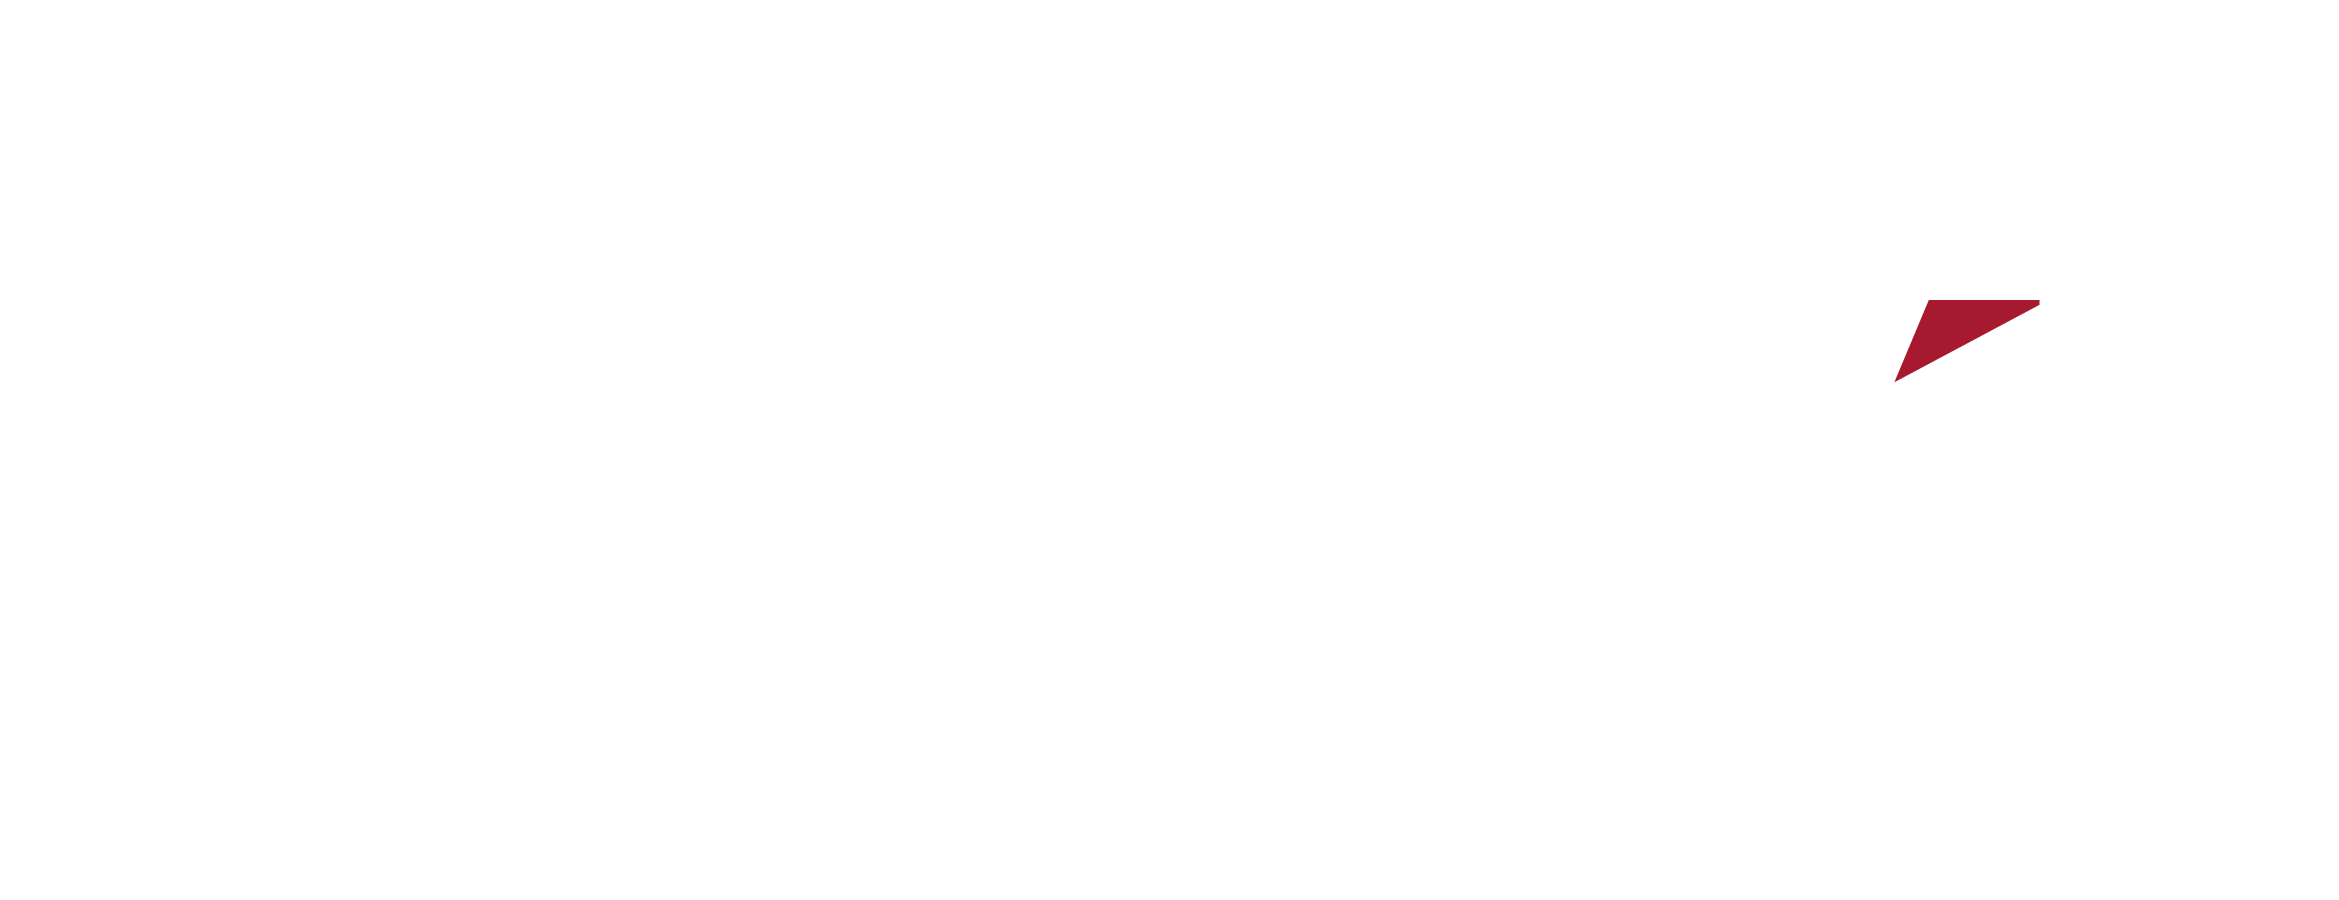 Envoy Logo - Logos and Photos | Envoy Air